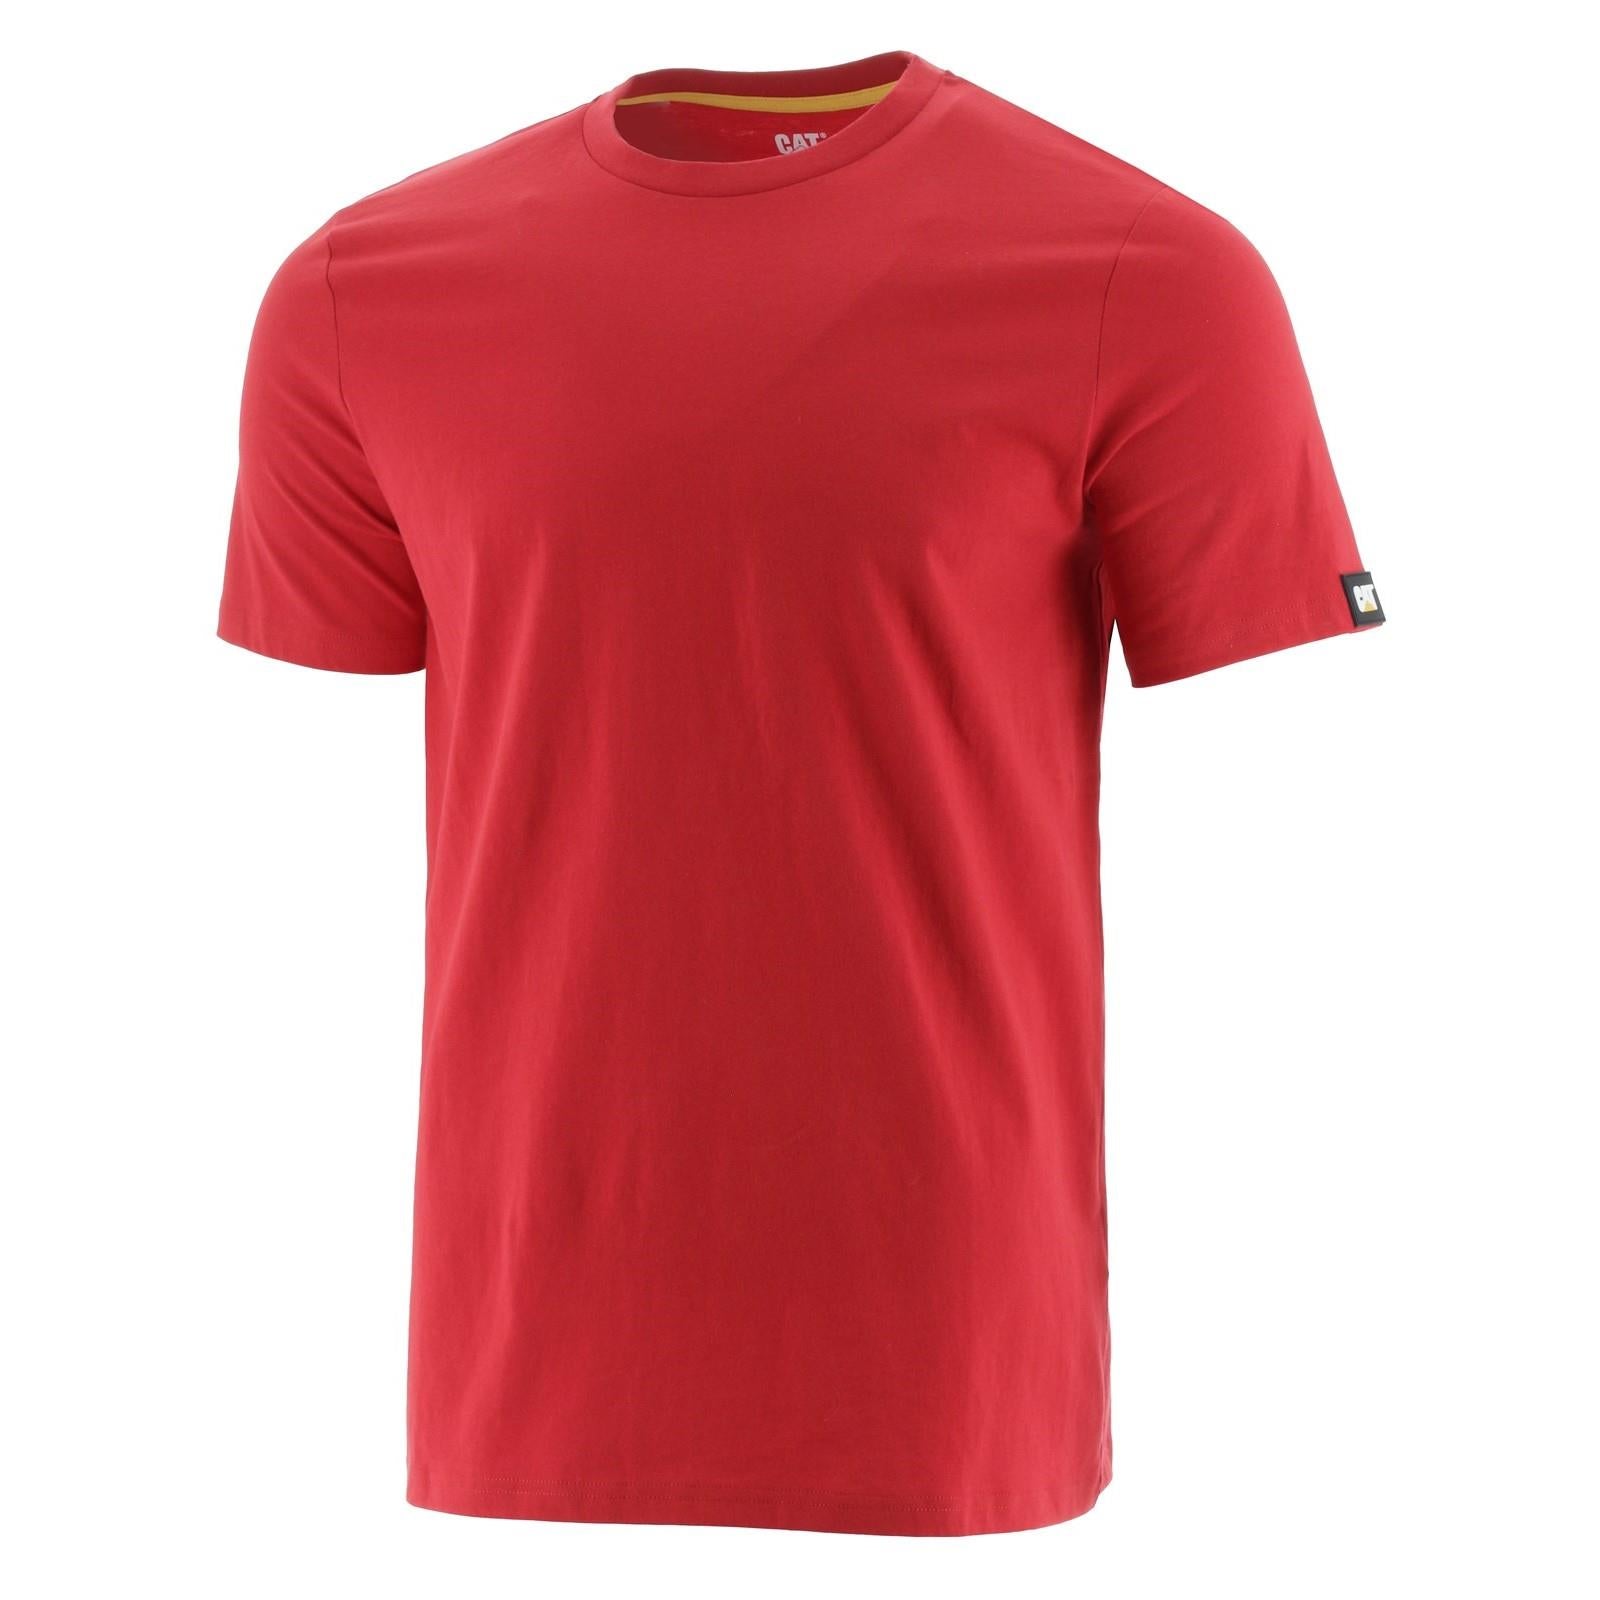 Caterpillar CAT Essentials Tee red cotton short-sleeve T-shirt #1510590